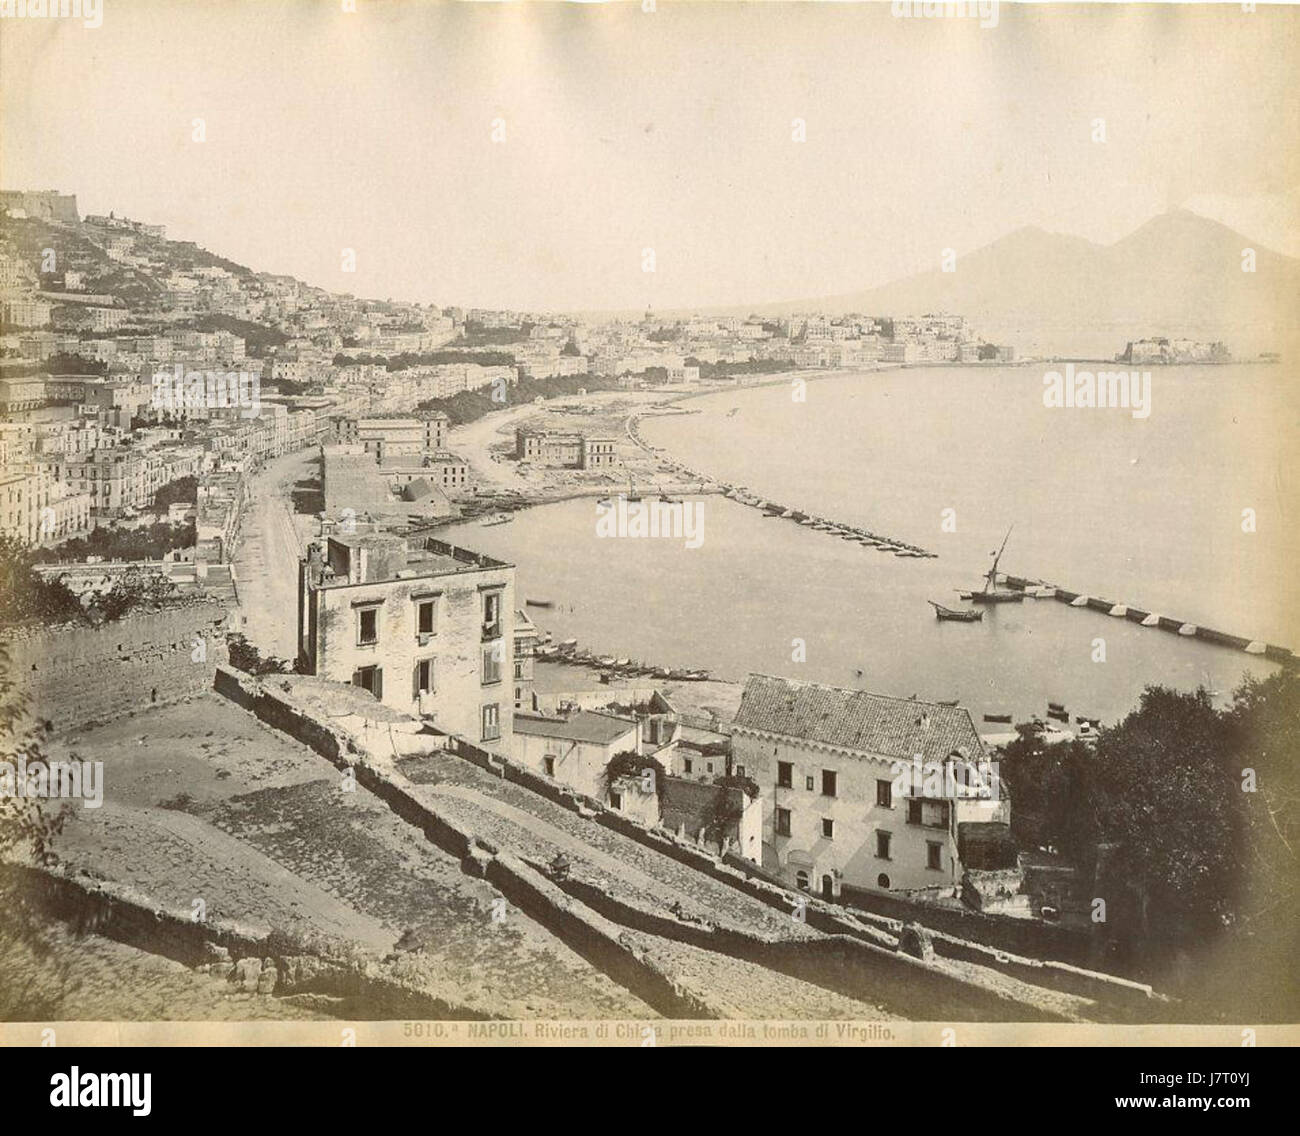 Brogi, Giacomo (1822 1881)   n. 5010a   Napoli   Riviera di Chiaia dalla tomba di Virgilio Stock Photo